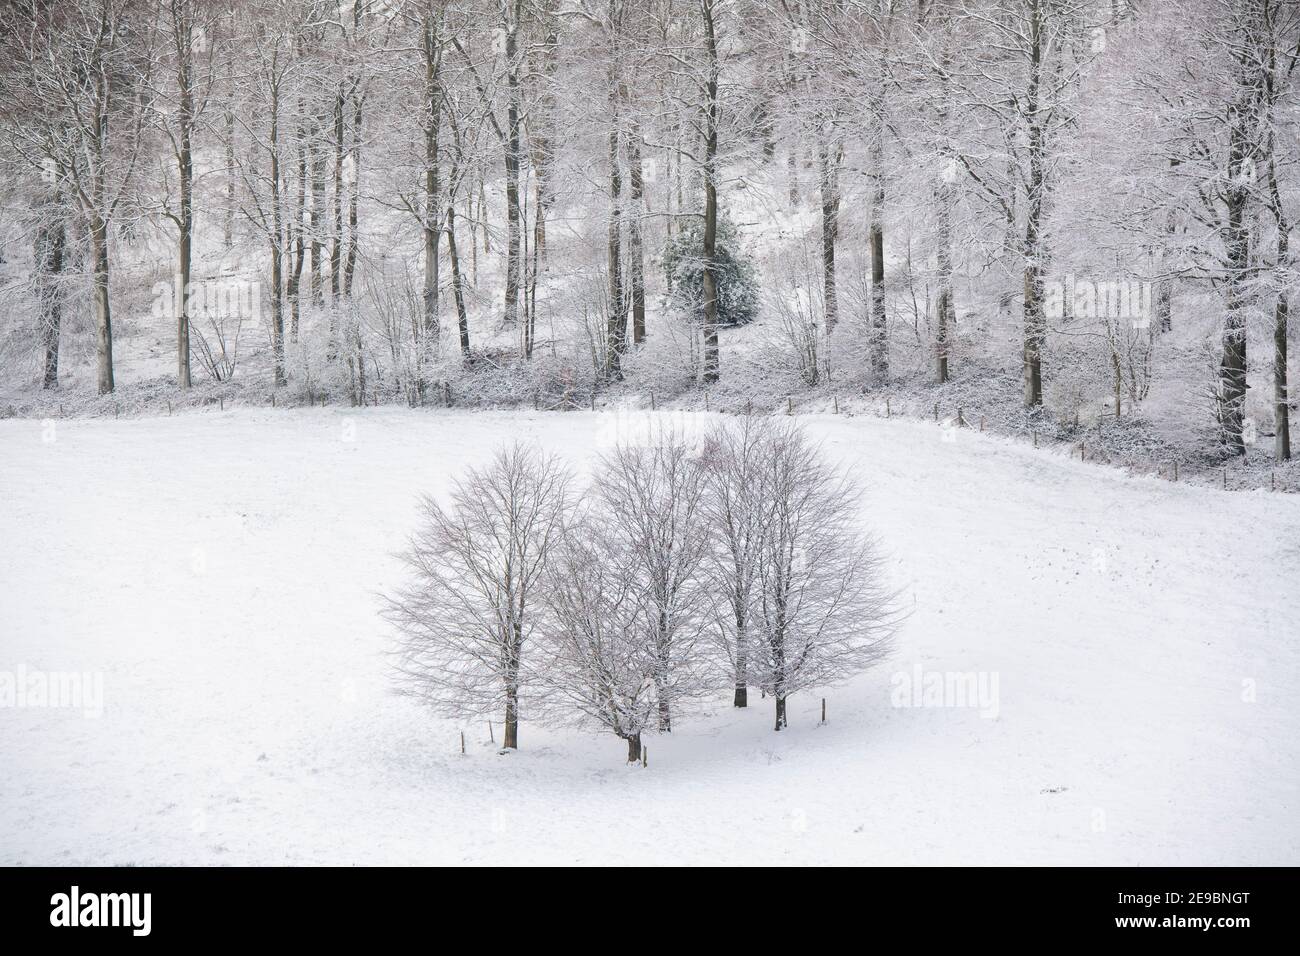 En janvier, dans la campagne des cotswolds, des arbres et des champs ont été enneigés. Lower Coscombe, Cotswolds, Gloucestershire, Angleterre Banque D'Images